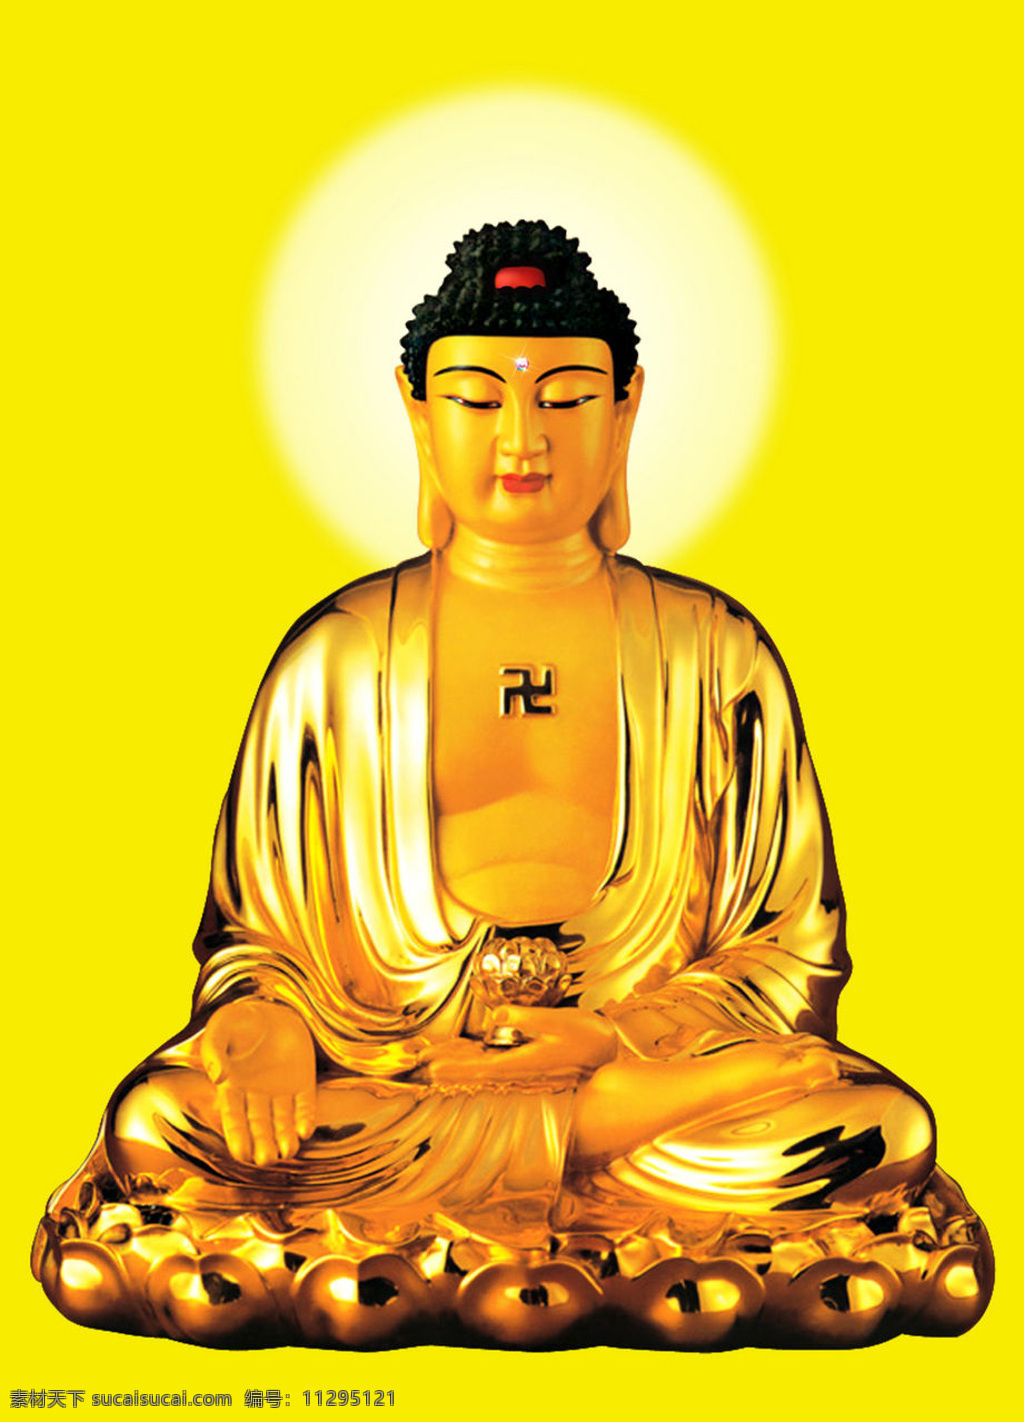 阿弥陀佛坐像 佛像 文化艺术 宗教信仰 设计图库